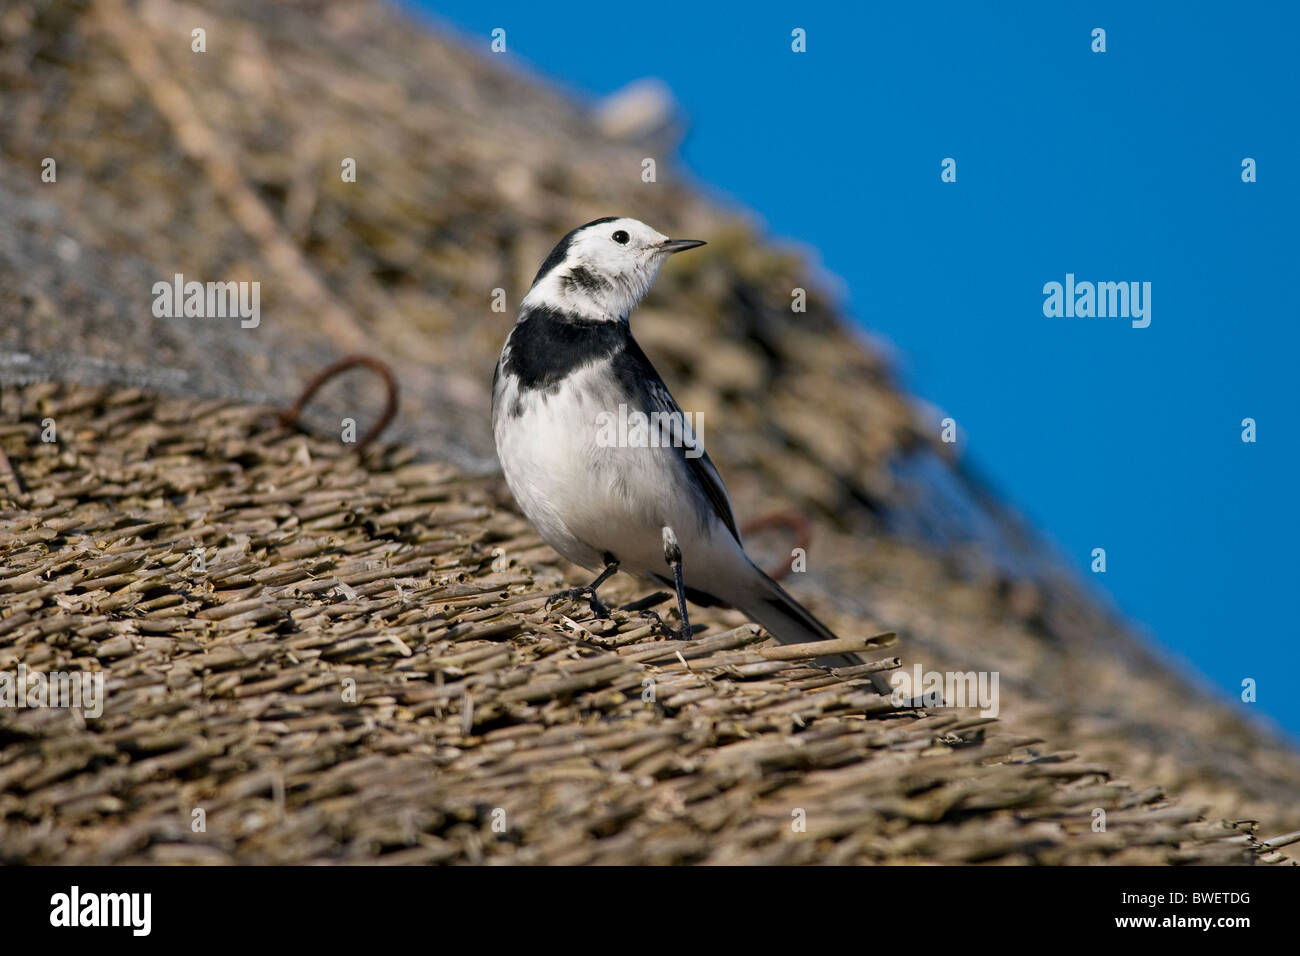 Pied wagtail bird seduta sul cottage con tetto in paglia tetto Foto Stock